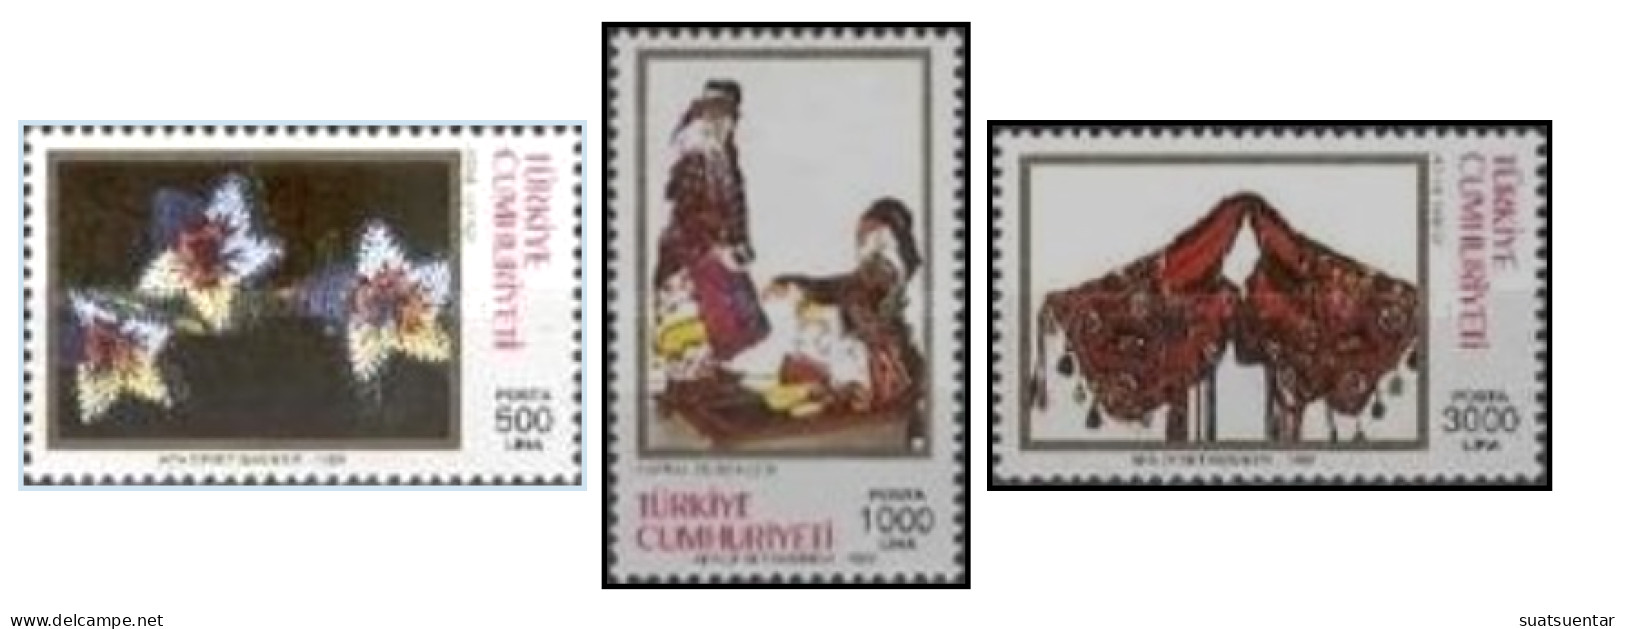 1992 Traditional Crafts MNH - Ongebruikt